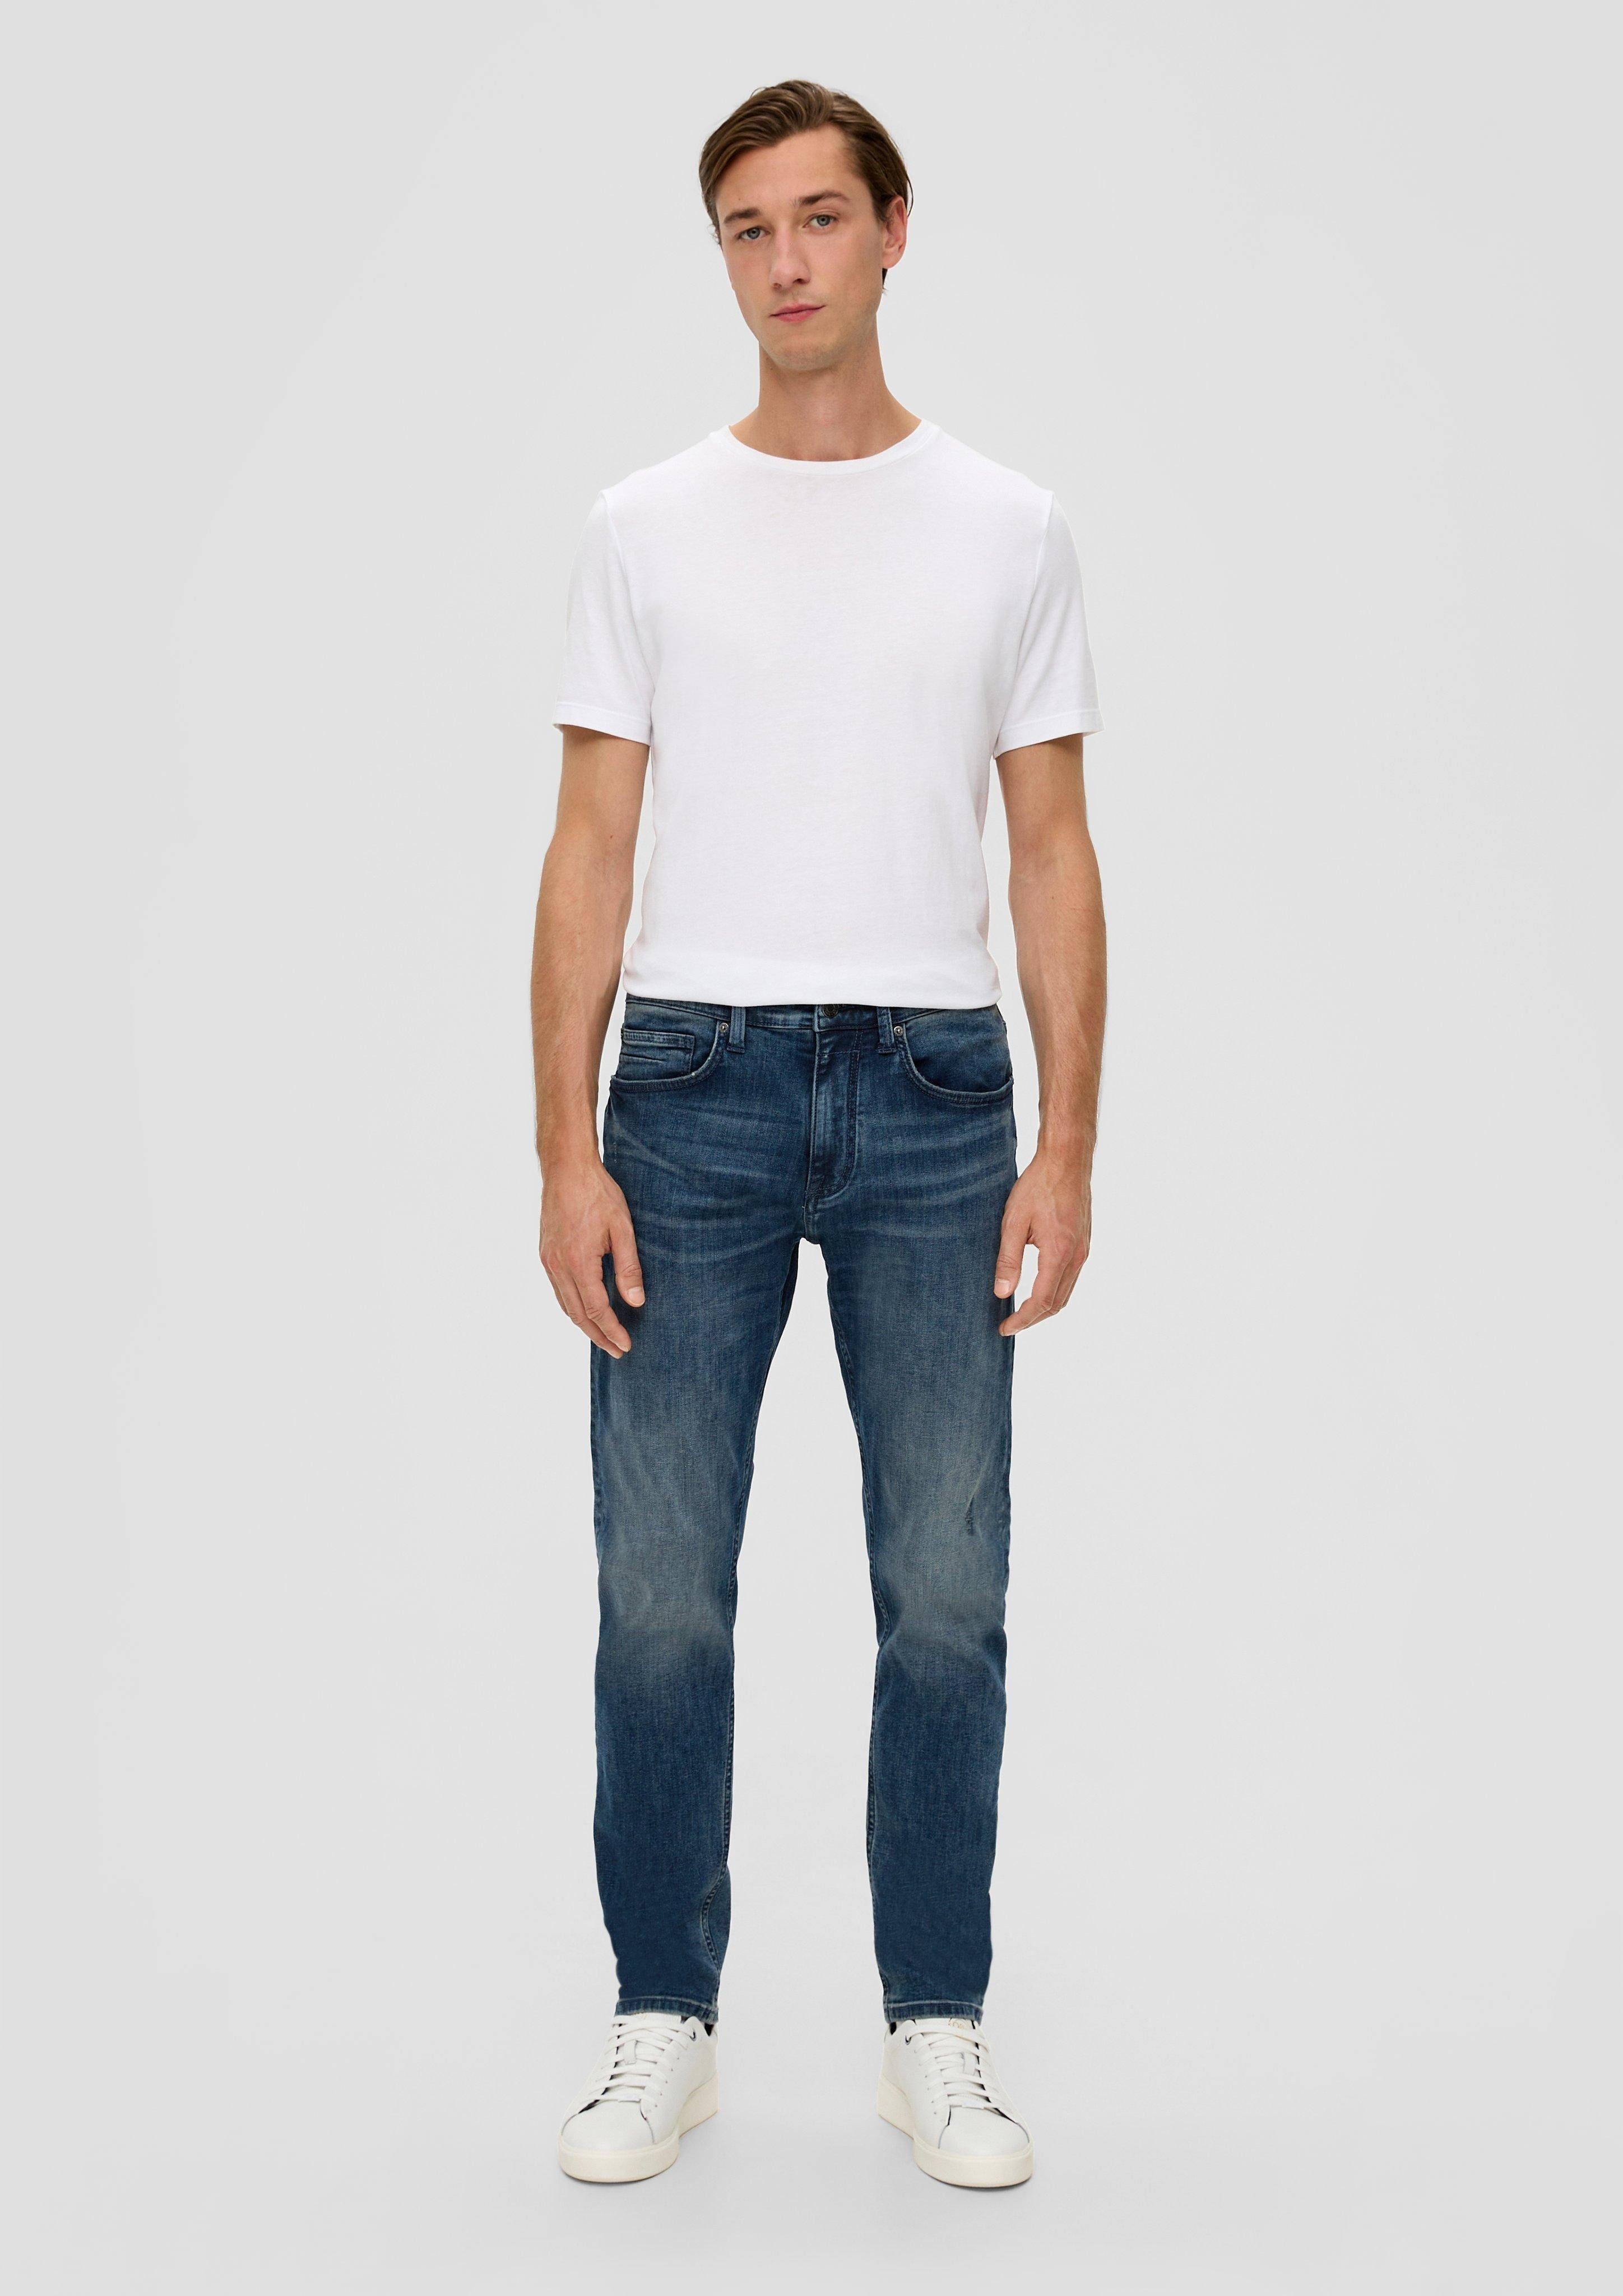 s.Oliver Stoffhose Jeans / Regular Fit / Mid Rise / Tapered Leg / 5-Pocket-Stil Leder-Patch, Waschung dunkelblau